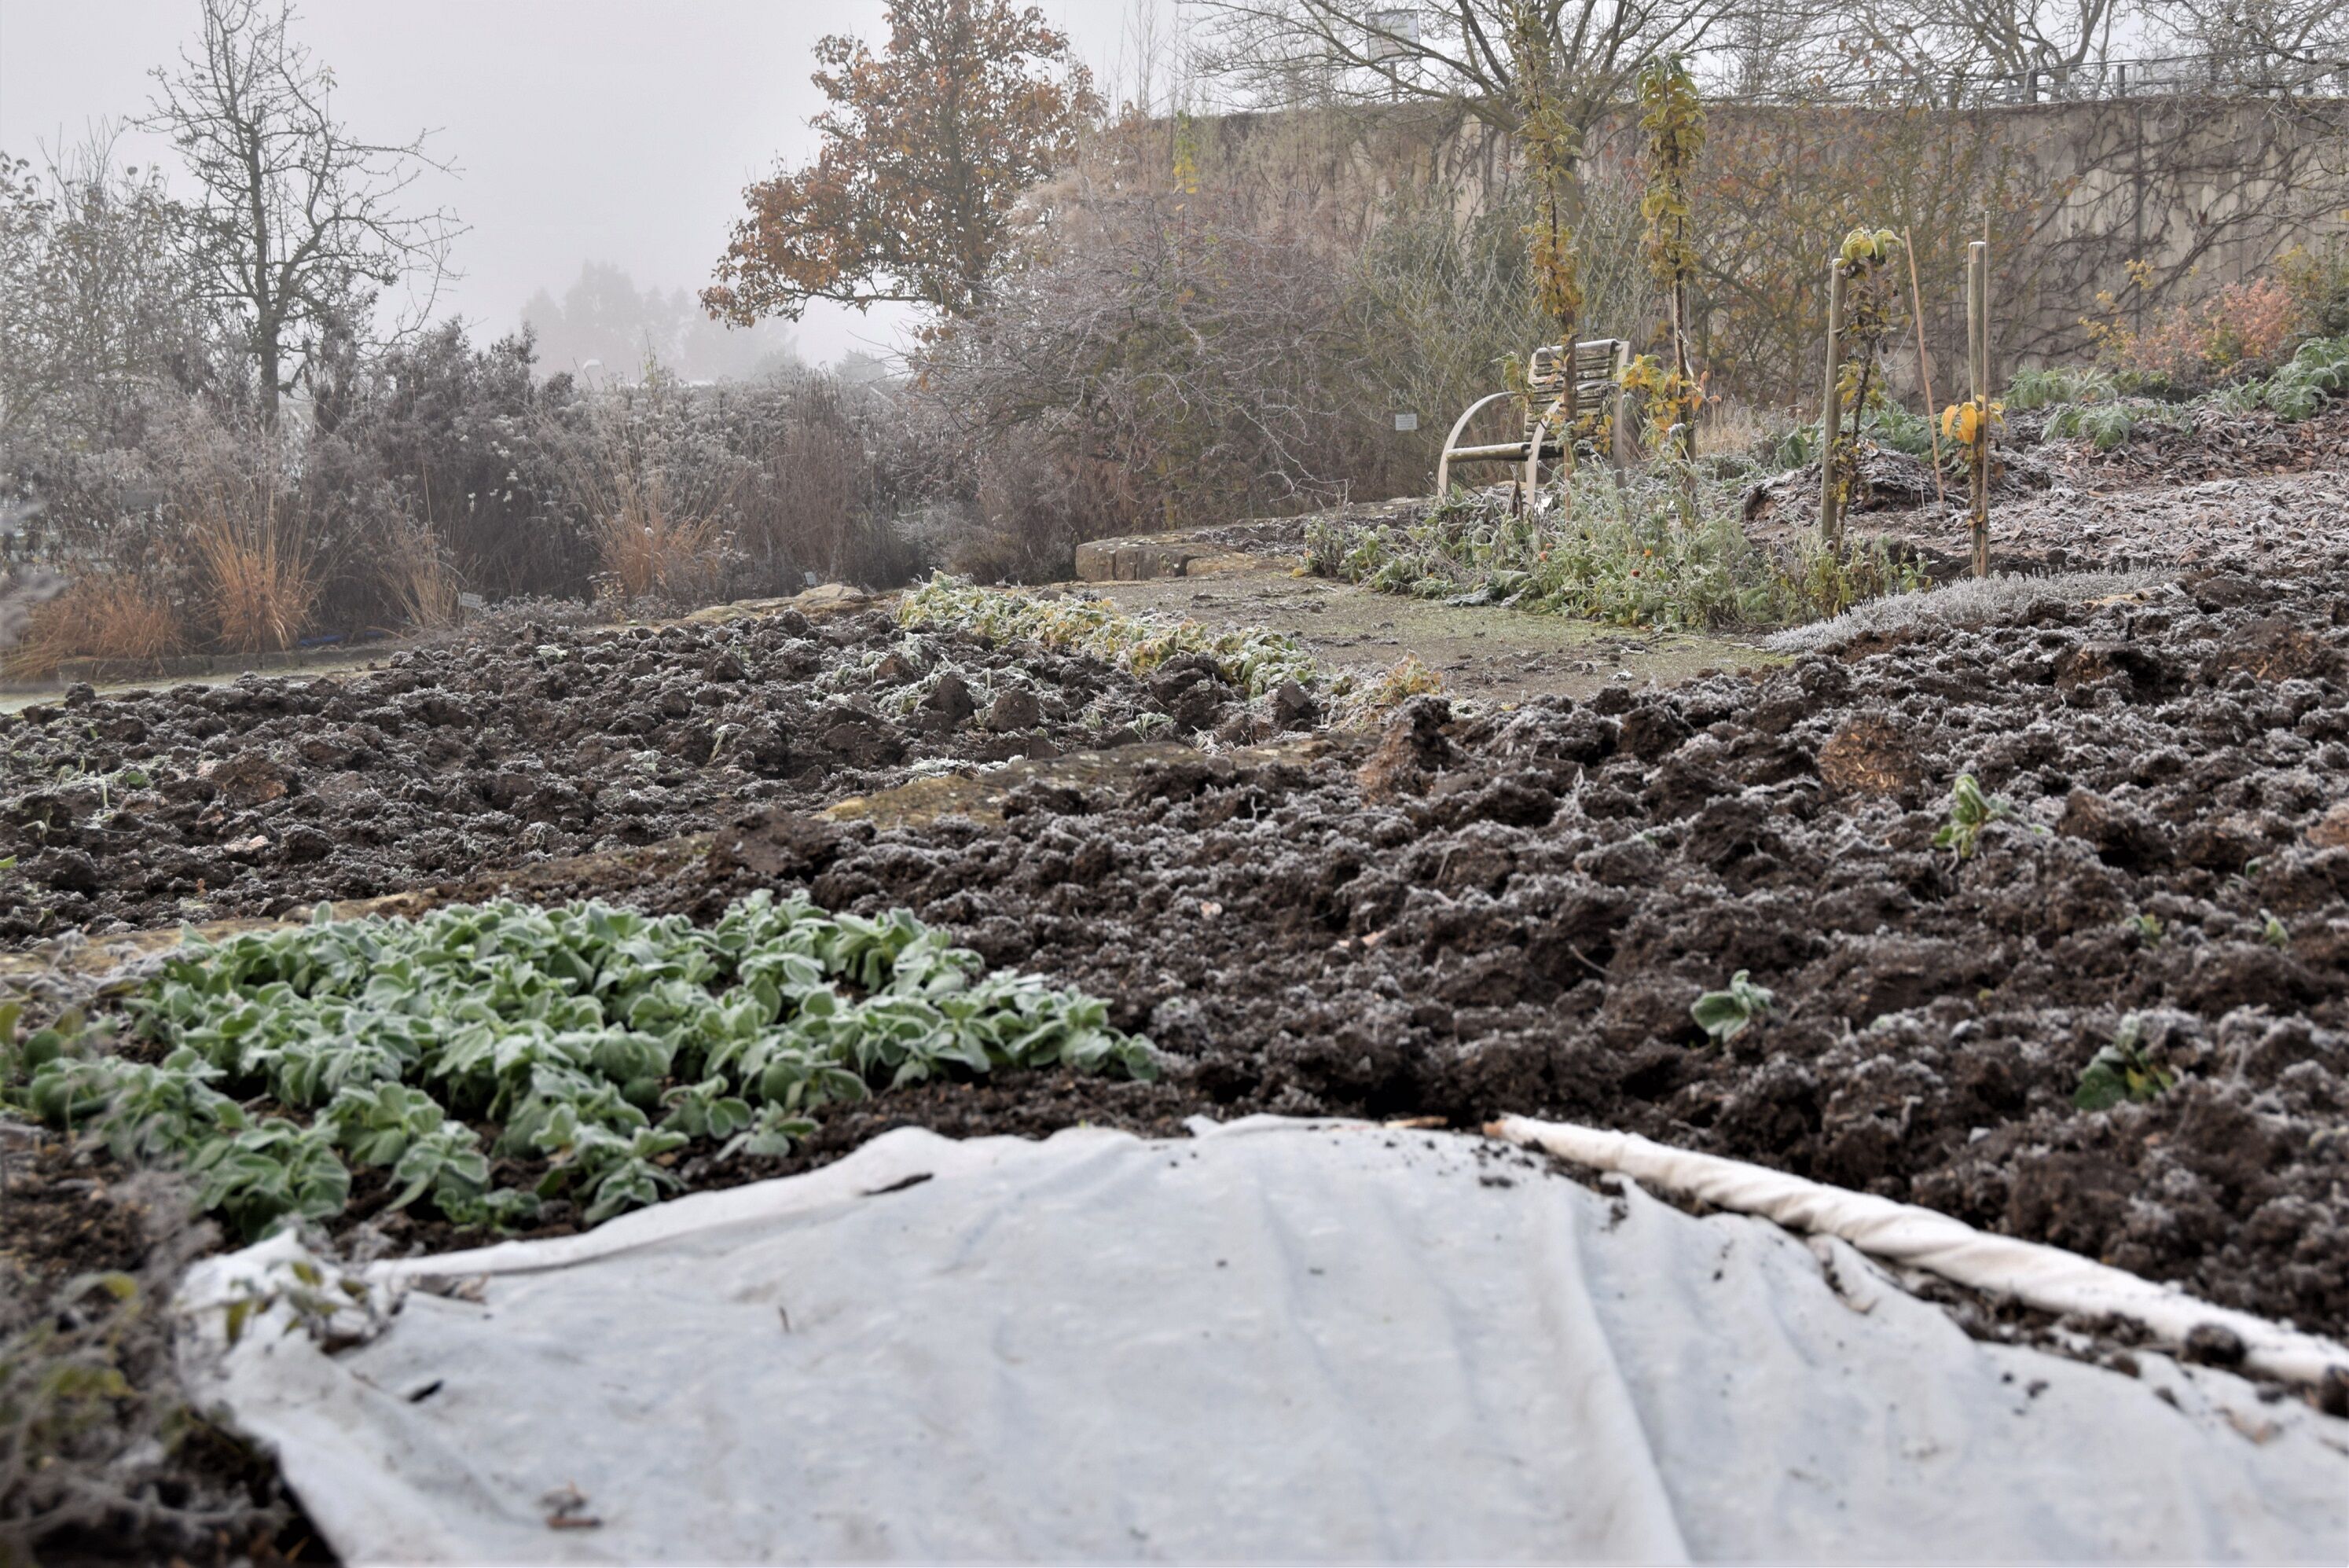 Kälteunempfindliche Gemüse sollten so lange wie möglich im Beet stehen bleiben. Foto: Christine Scherer/Bayerische Gartenakademie